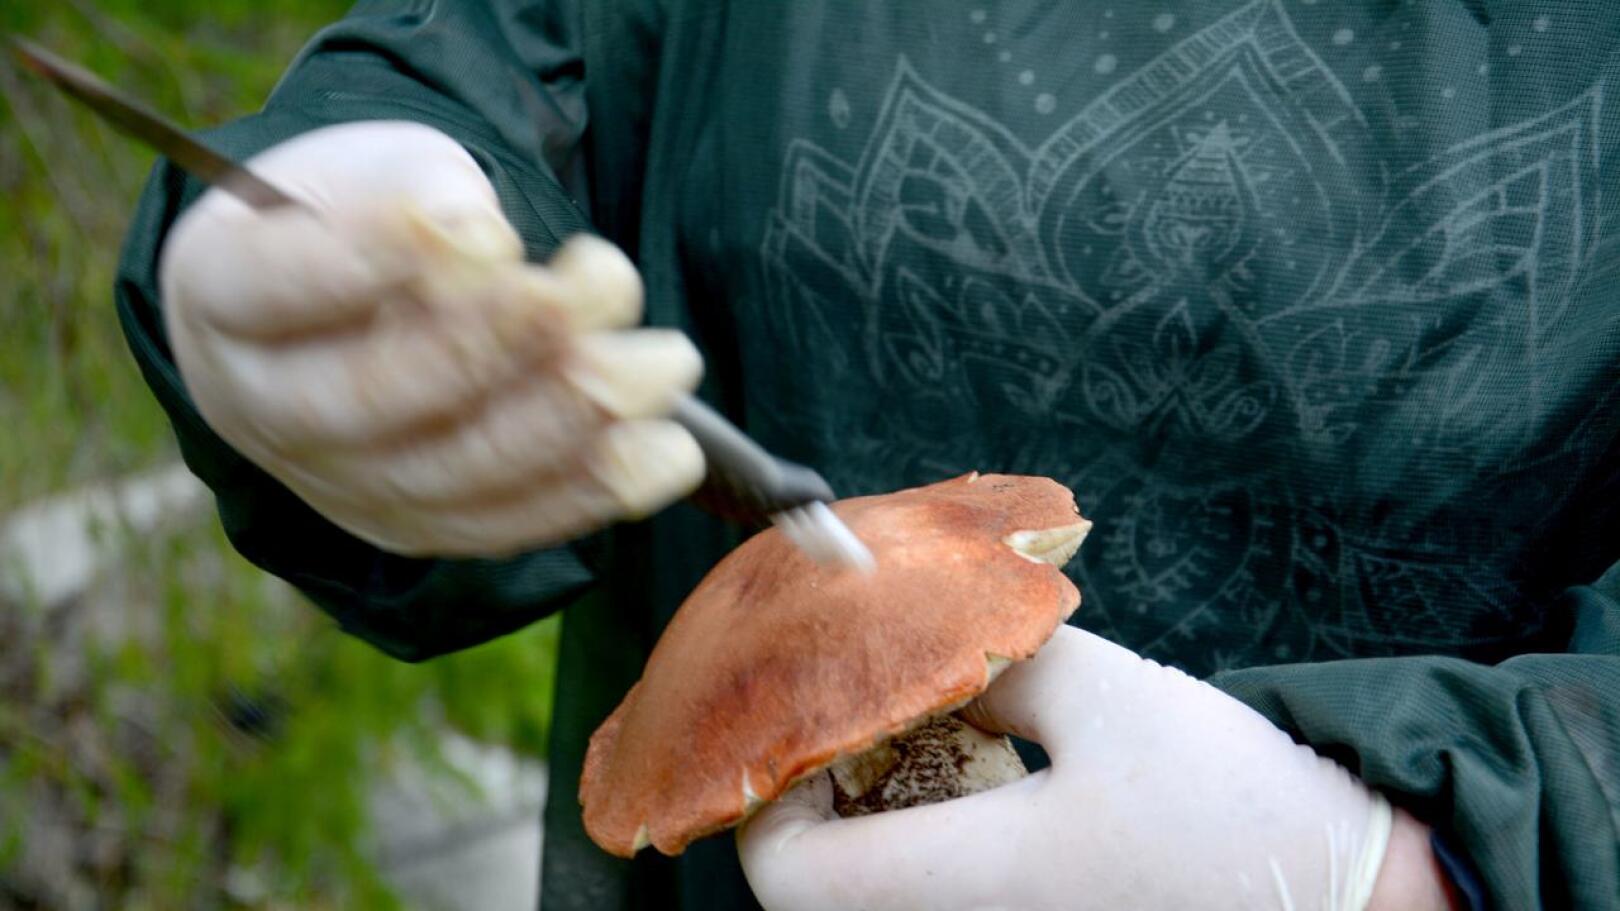 Sienien puhdistaminen on yksinkertaista. Huonot kohdat leikataan pois ja harjalla pyyhkäistään irtoroska sienistä.